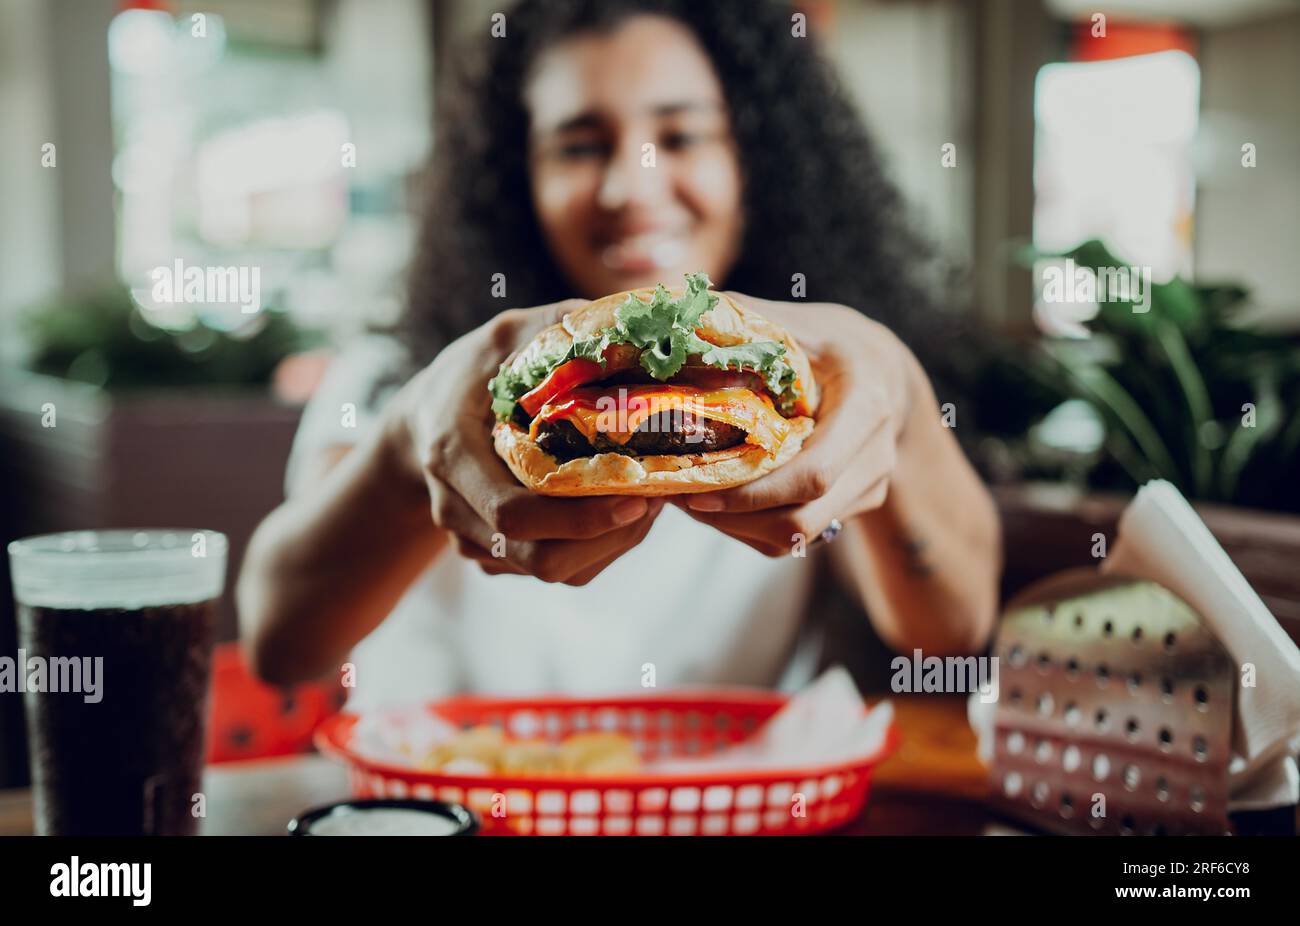 Fille souriante montrant un hamburger dans un restaurant. Gros plan d'une femme montrant un hamburger appétissant dans un restaurant Banque D'Images